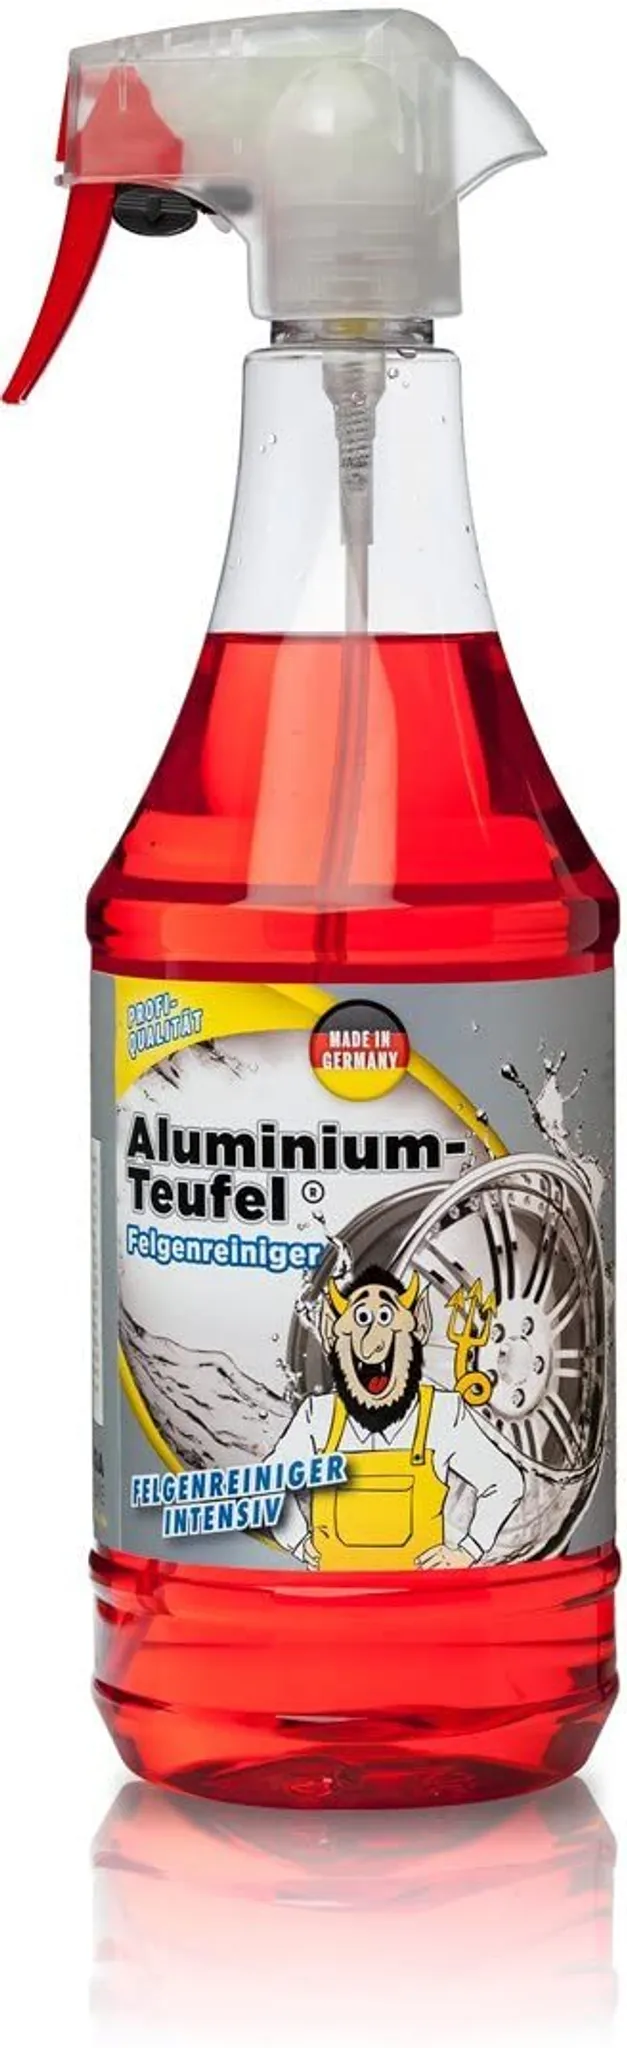 SONAX XTREME Felgenreiniger PET-Sprühflasche 750 ml Plus